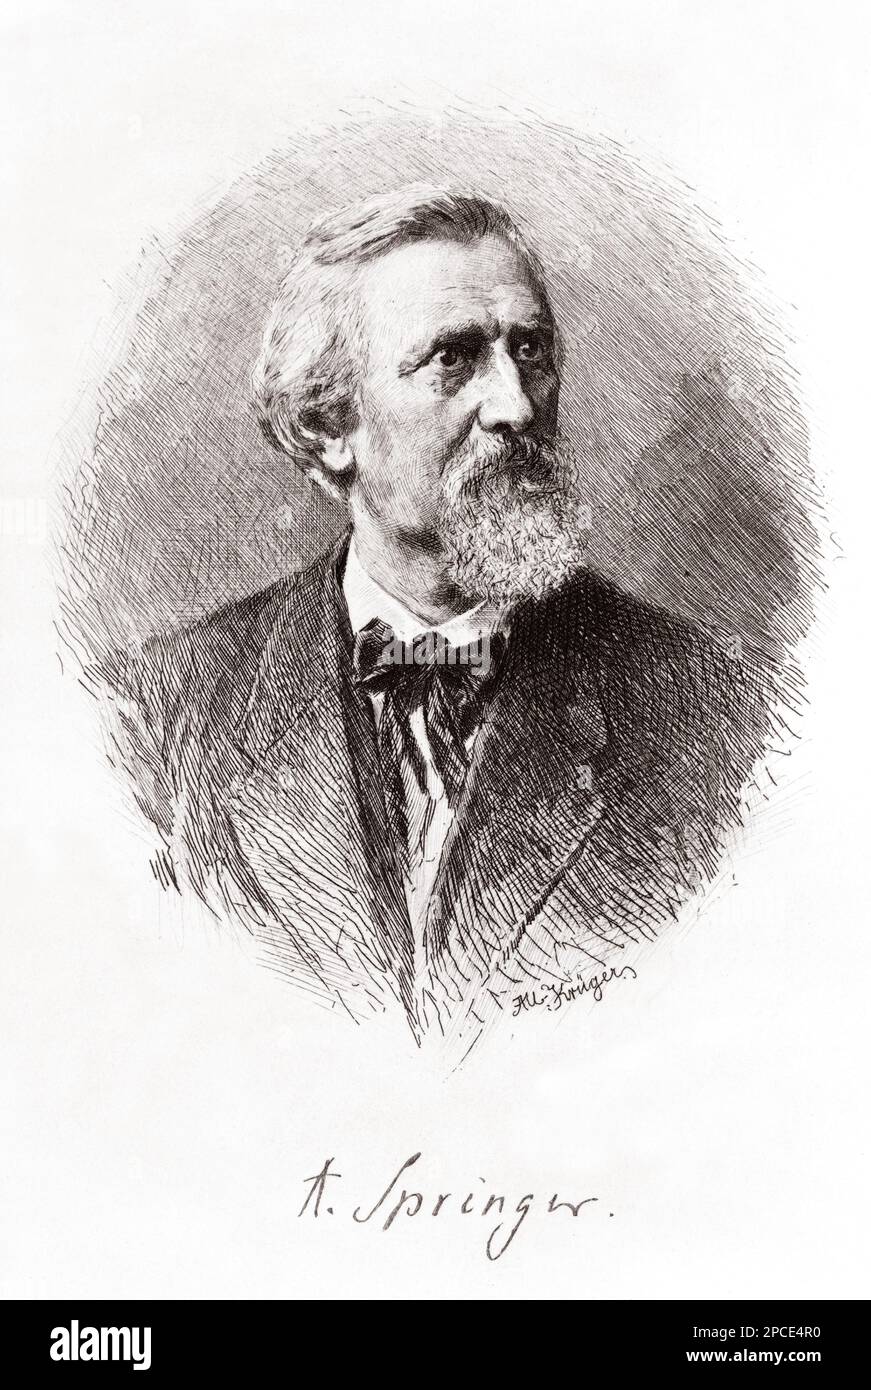 ANTON Heinrich SPRINGER ( 1825 - 1891 ) war deutscher Kunsthistoriker und Schriftsteller. - Portrait - Rituto - Kragen - colletto - LETTERATO - SCRITTORE - LETTERATURA - Literatur - SCRITTORE - SCHRIFTSTELLER - Krawatte - Cravatta - Bart - barba - STORICO - Incisione - Gravur - Unterschrift - Firma - Autogramm - Autografo --- Archivio GBB Stockfoto